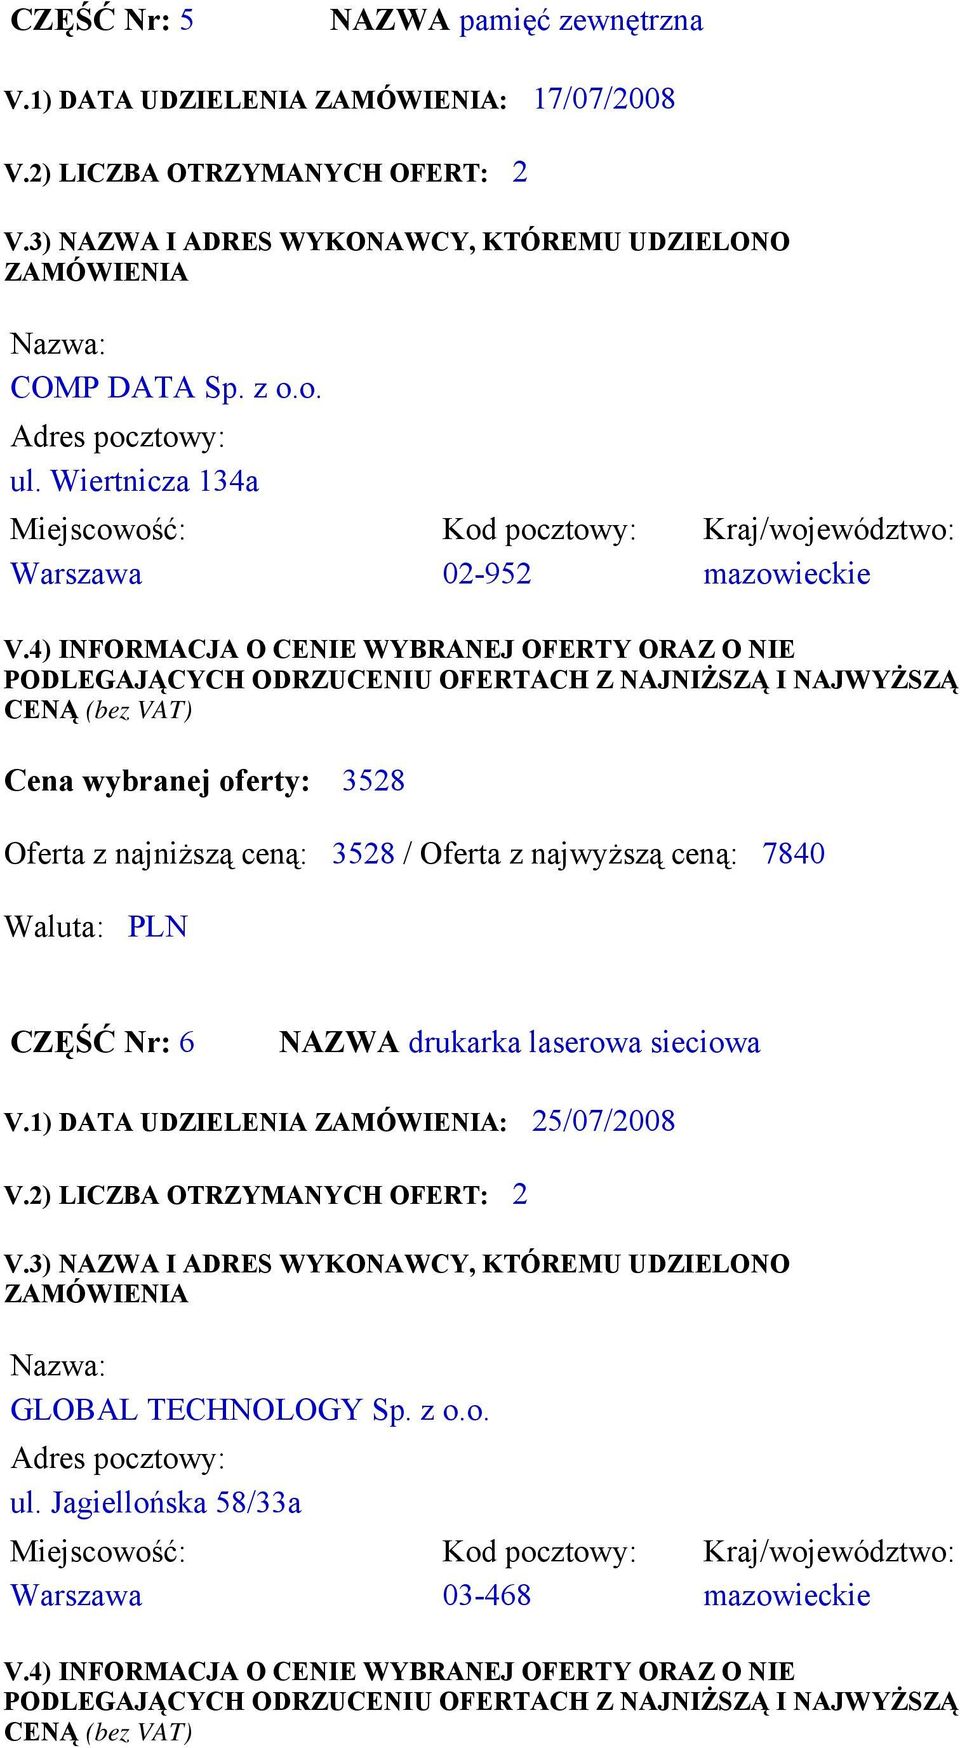 Wiertnicza 134a Warszawa 02-952 mazowieckie Cena wybranej oferty: 3528 Oferta z